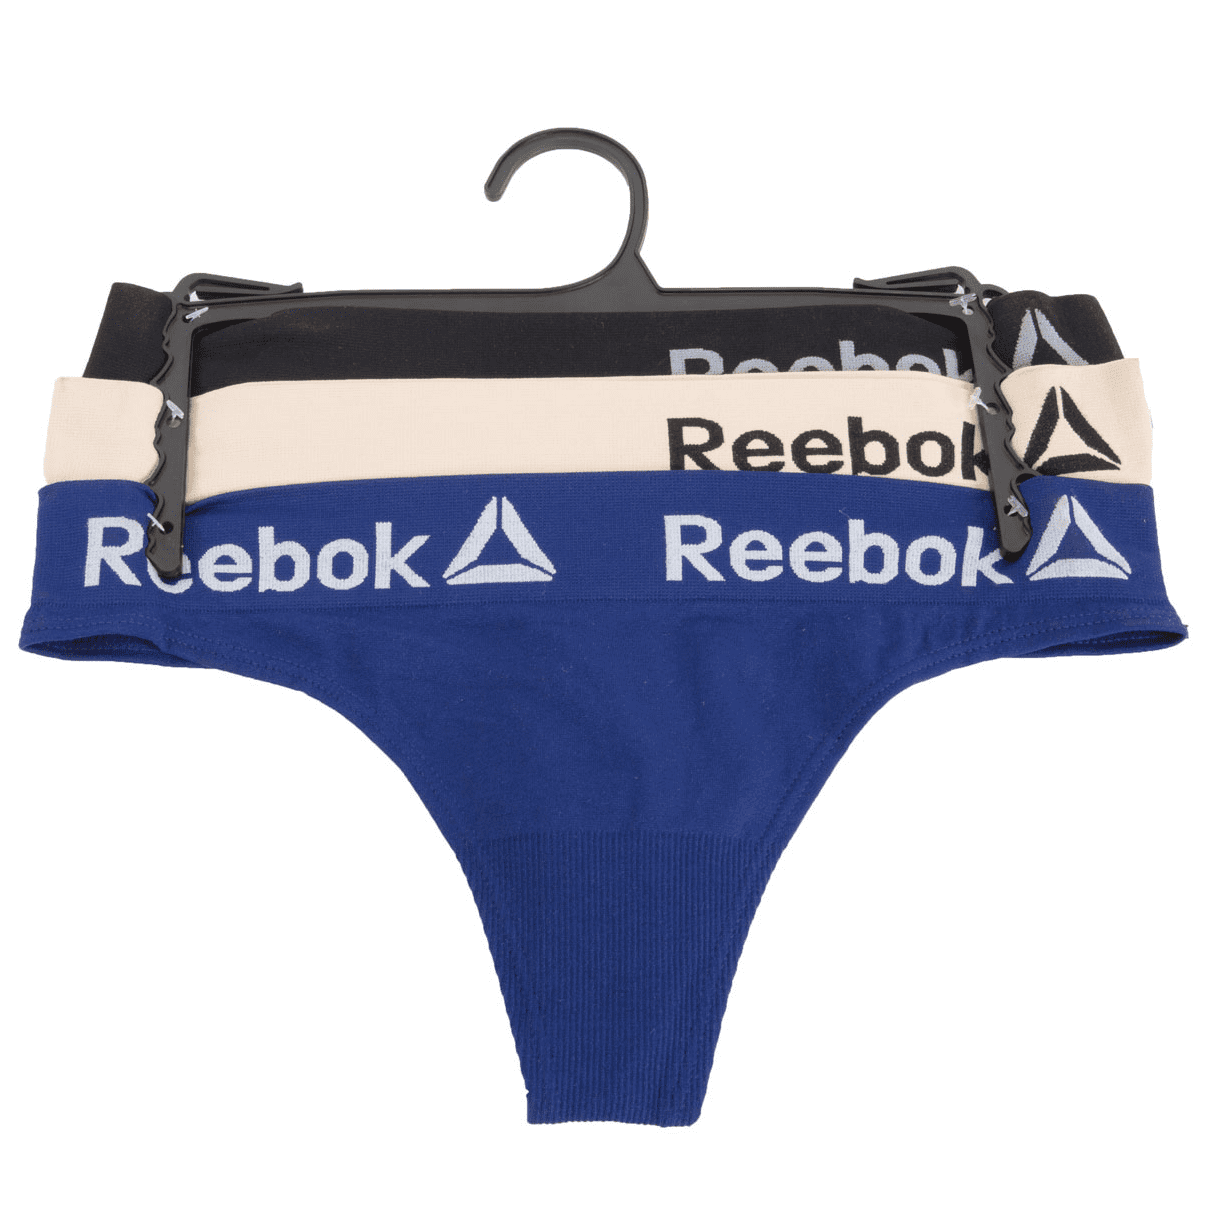 Reebok Women's Seamless Thong Panties, 4-Pack 